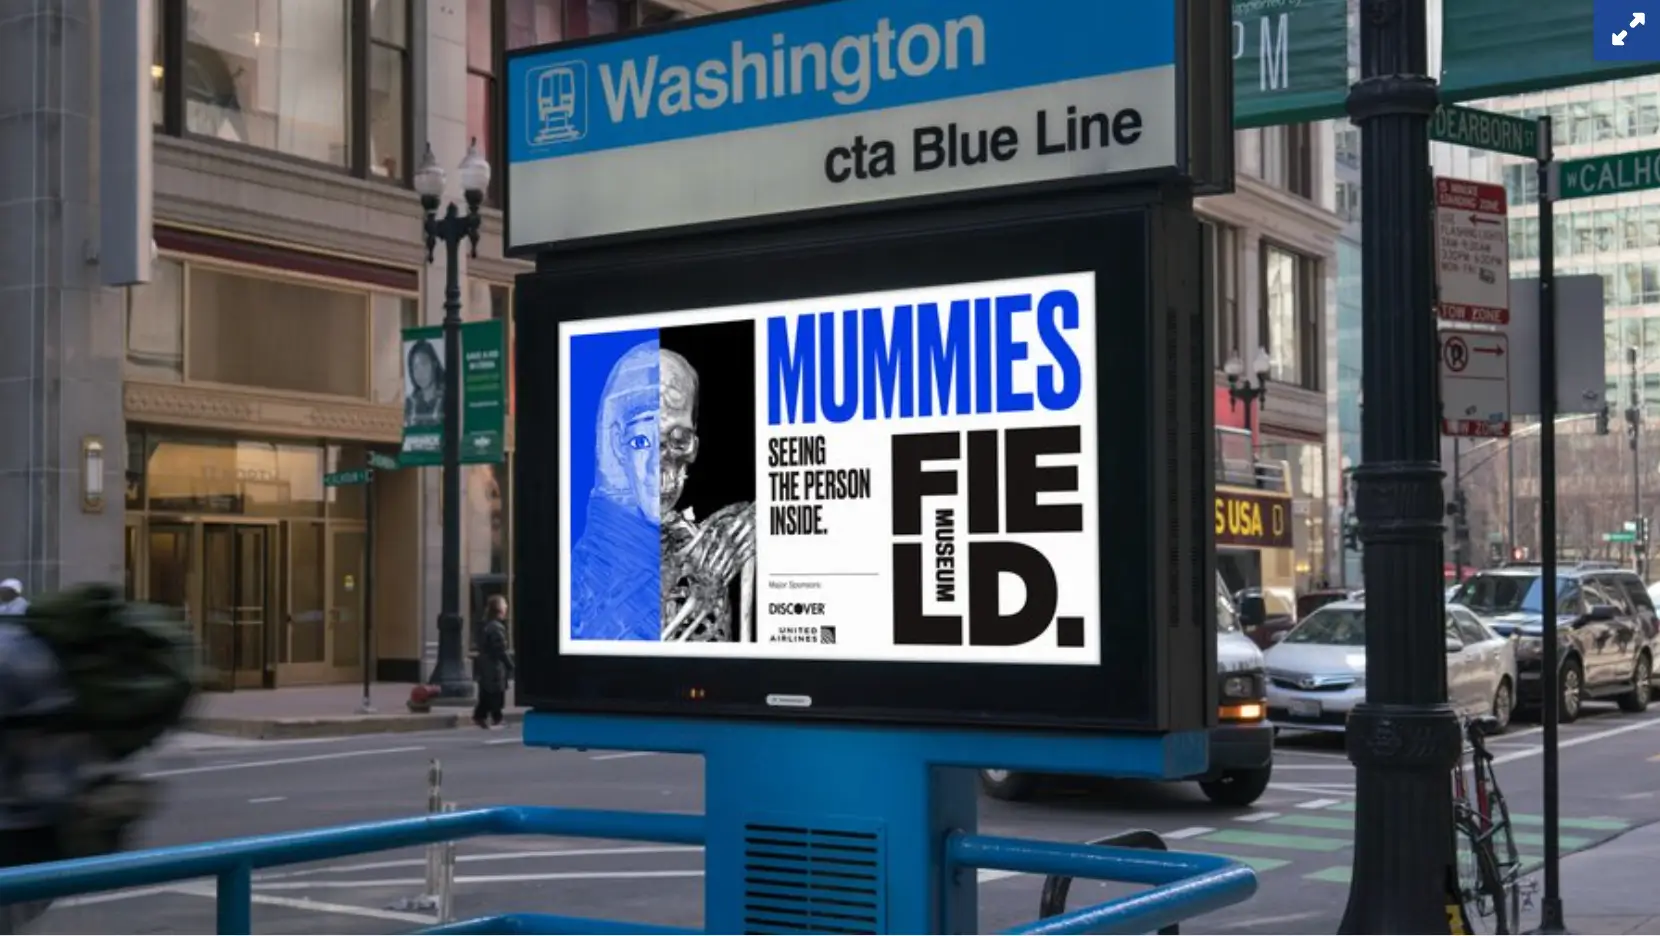 Dieses Bild zeigt die Field Museum-Kampagne von Chicago für ihre Mumienausstellung im Jahr 2018, bei der traditionelle Werbung mit Social-Media-Inhalten kombiniert wird, um Interesse zu wecken und Besucher in das Museum zu locken.